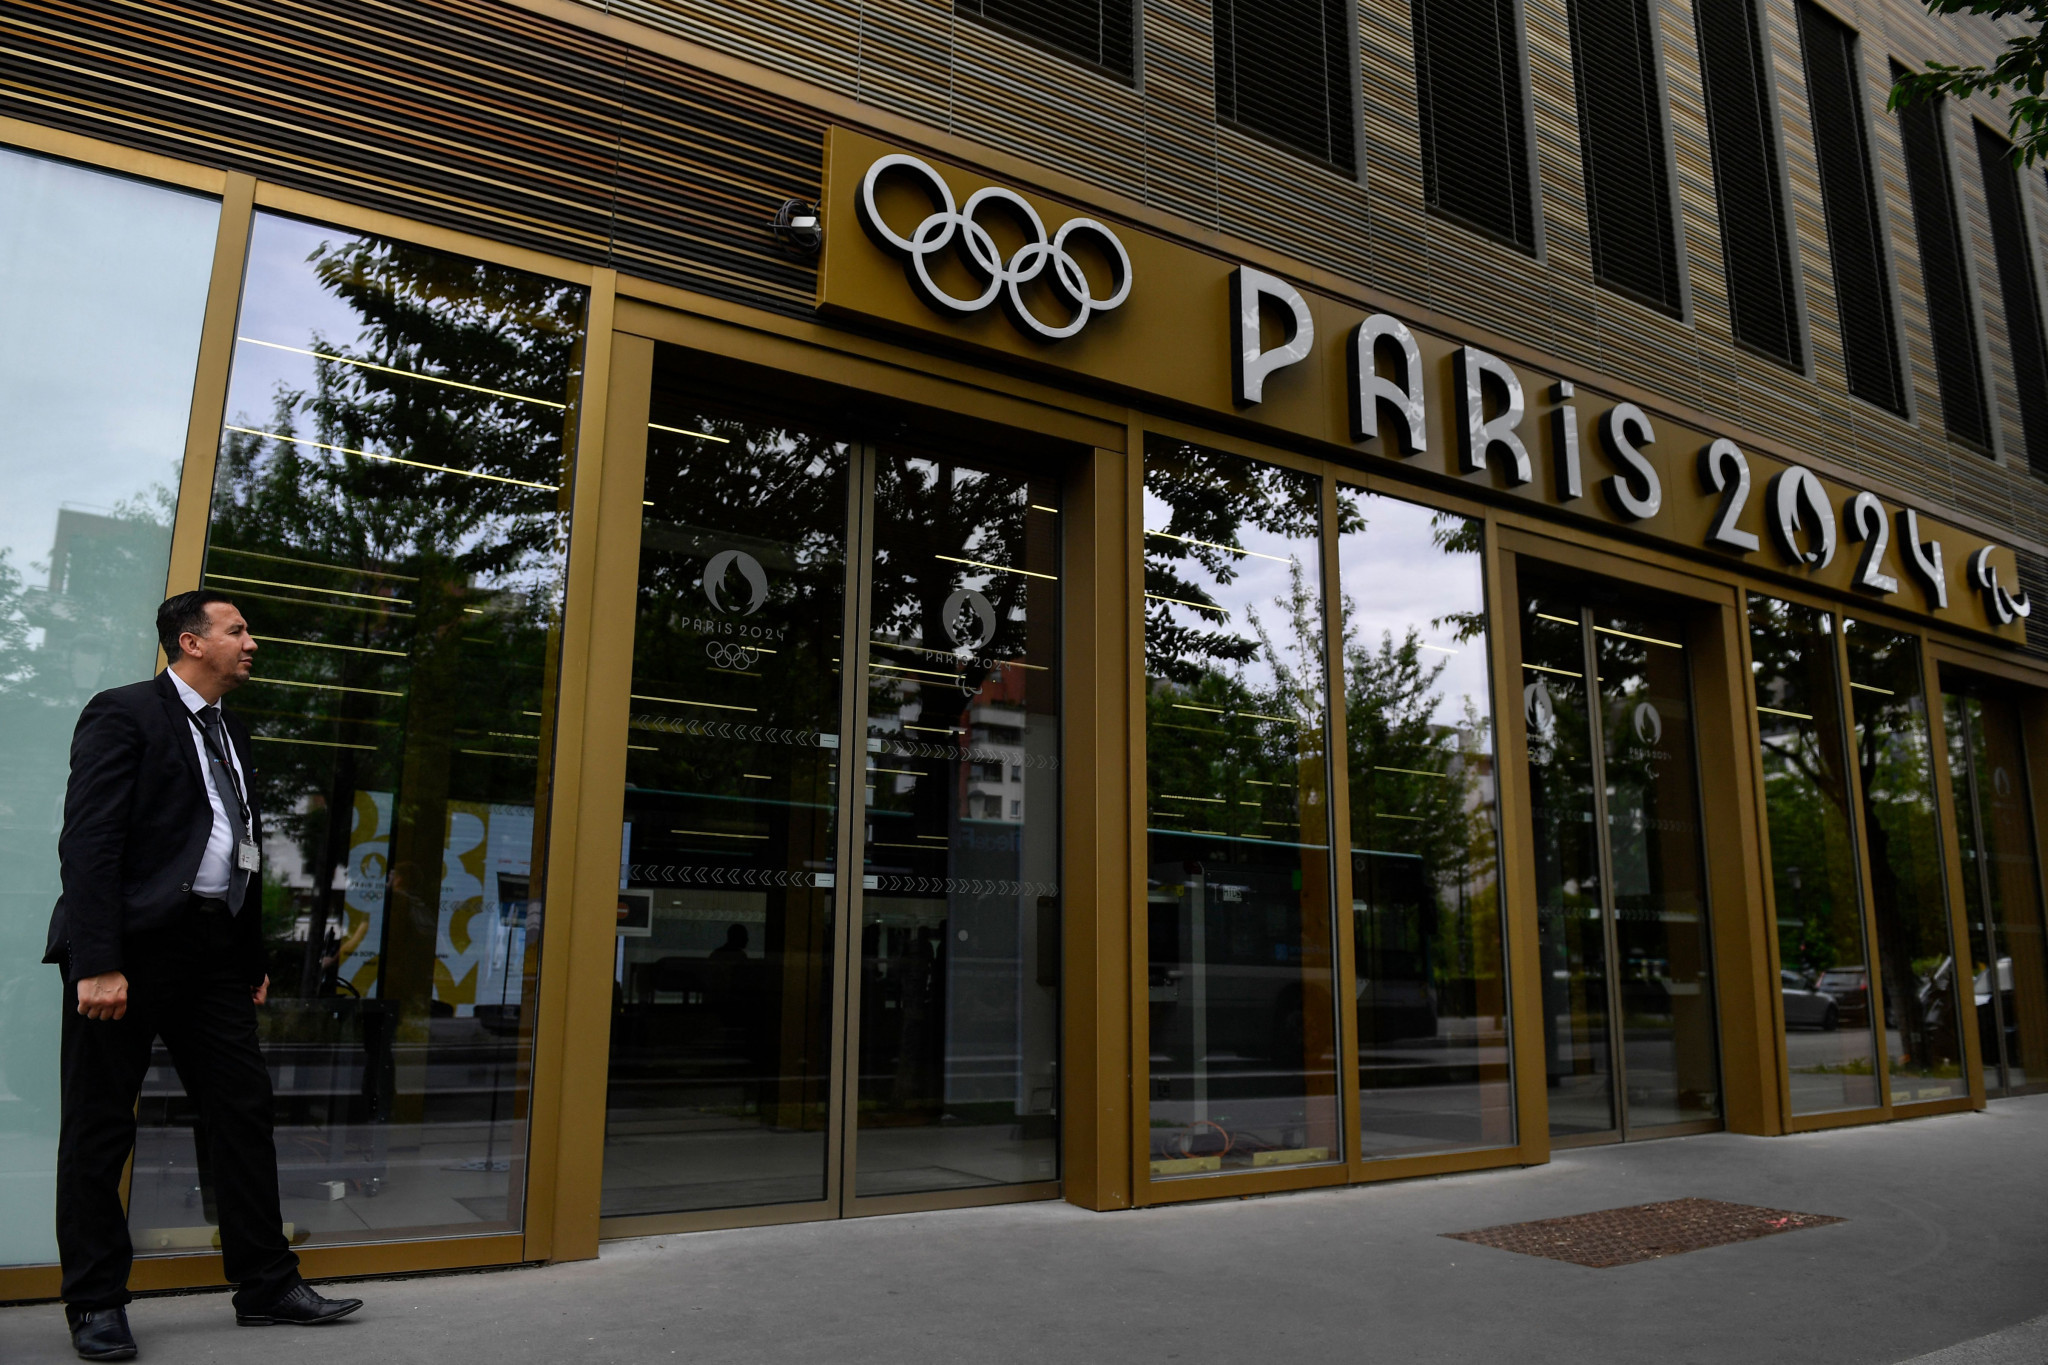 Police raid Paris 2024 headquarters in suspected corruption probe